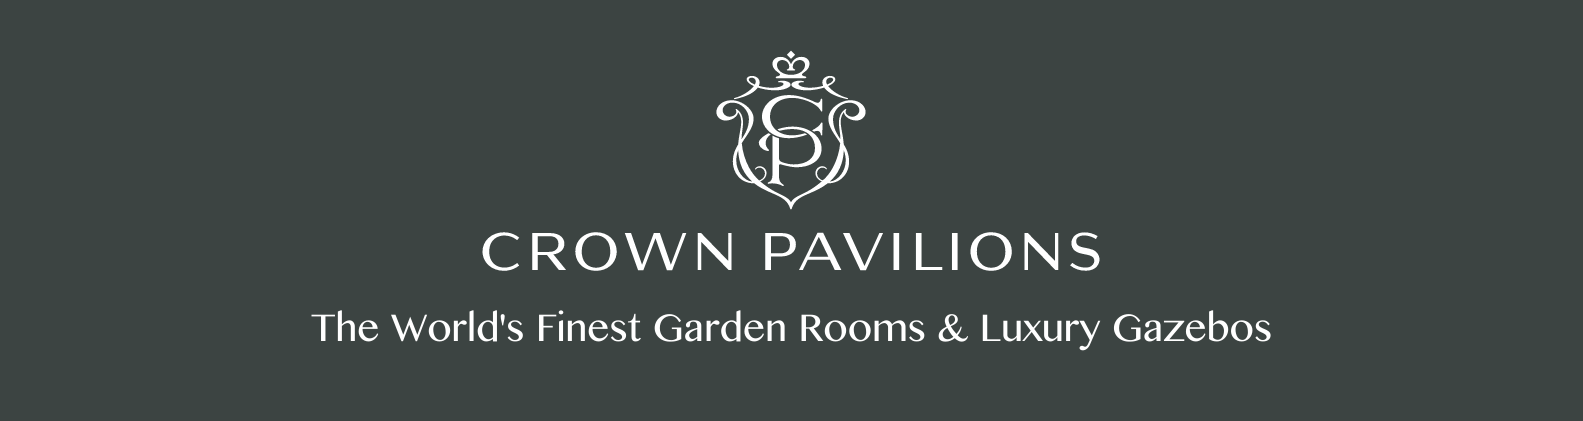 Crown Pavilions